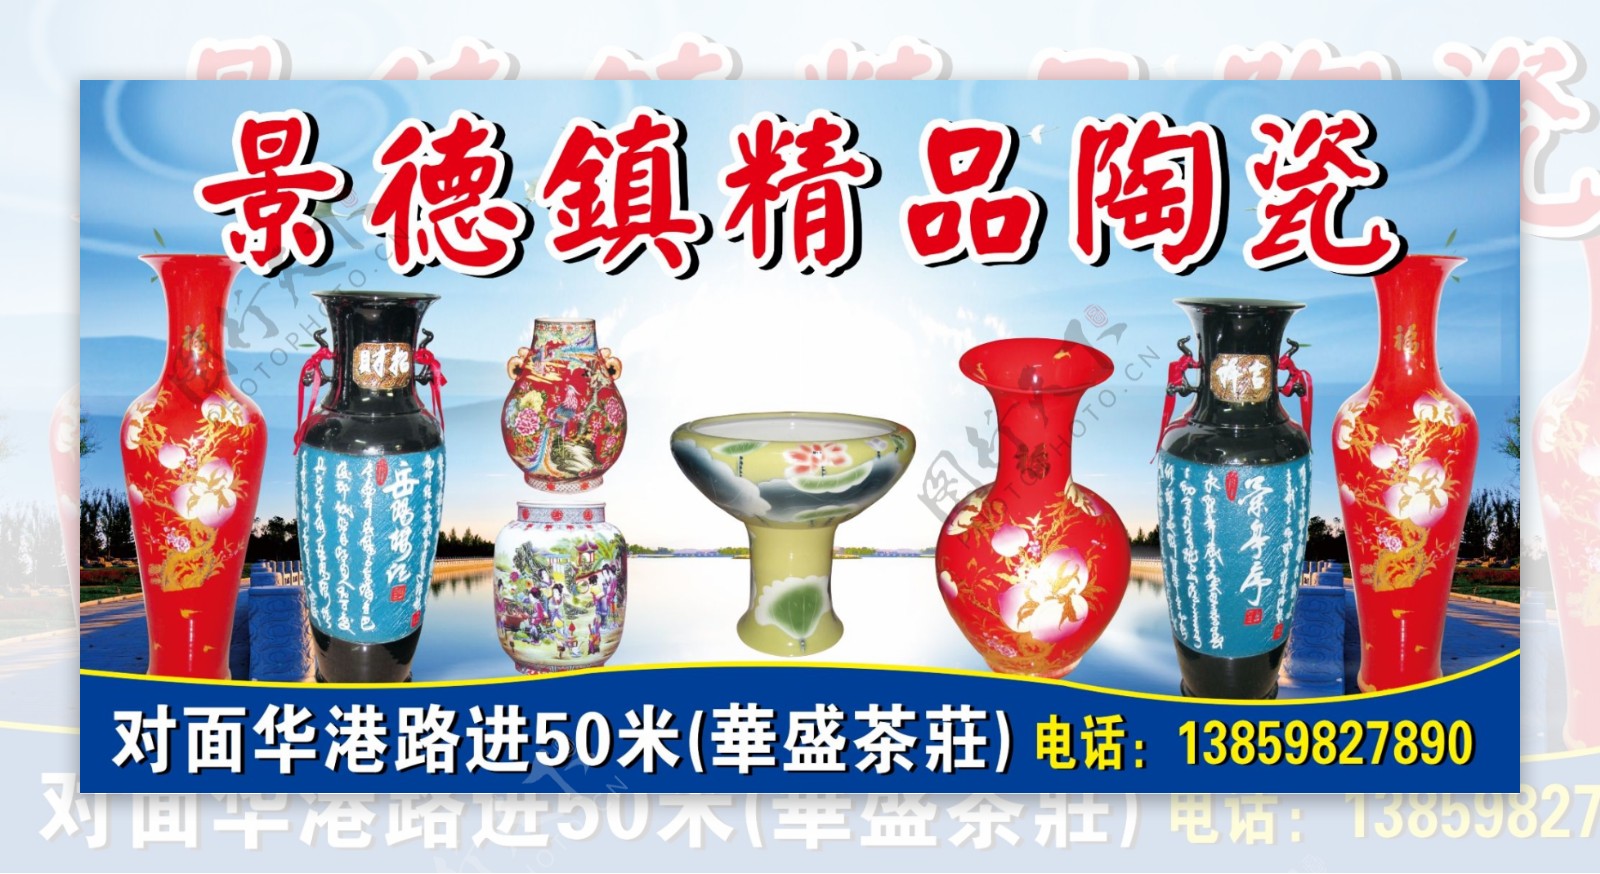 景德镇精品陶瓷图片